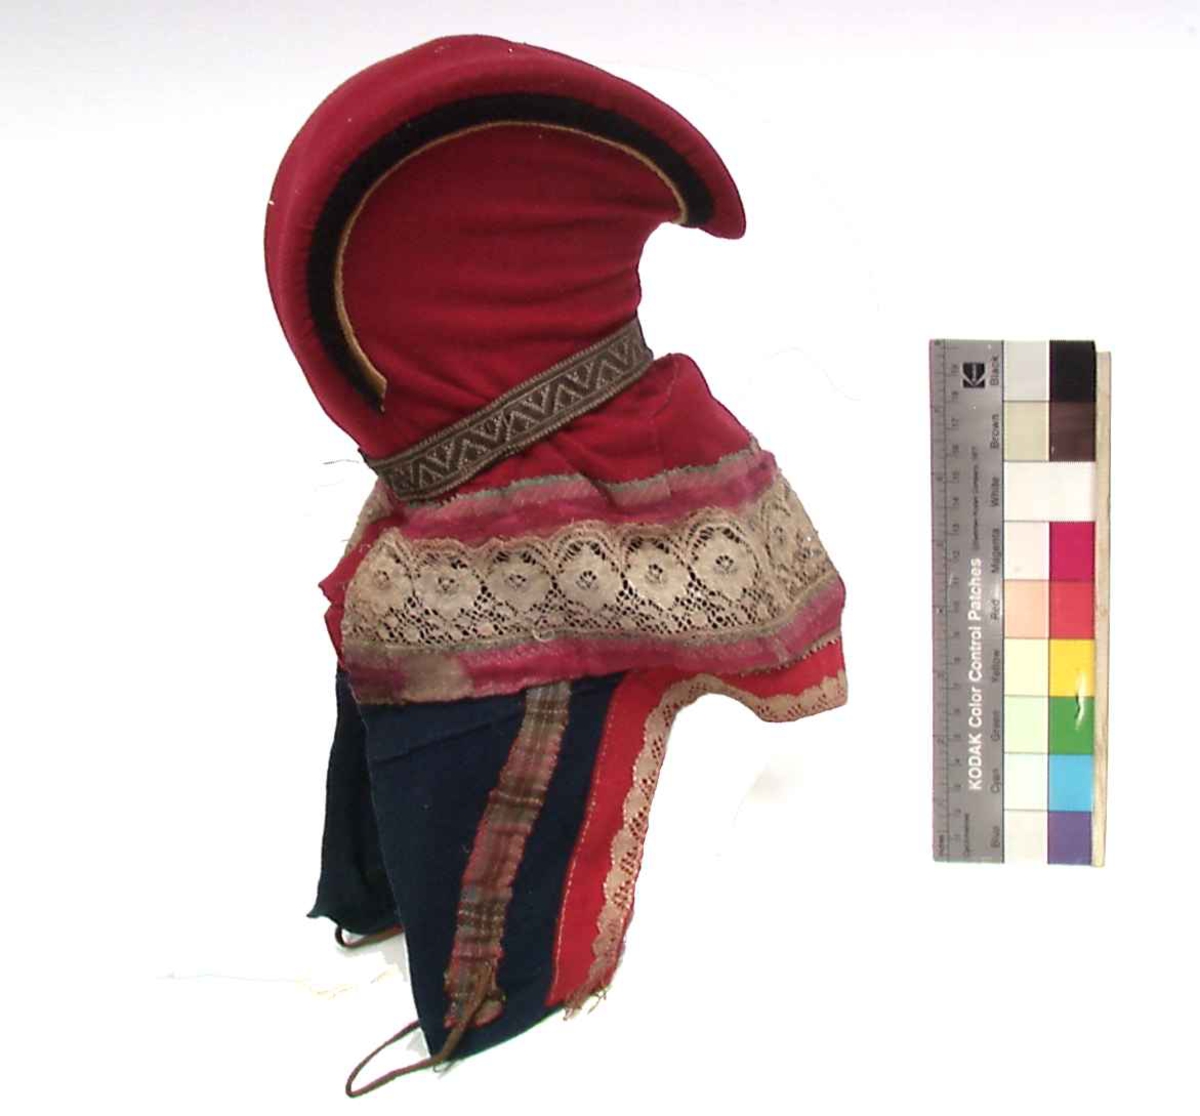 Rød hornlue med med blå og gule detaljer i ull/klede. Dekor av bånd i silke, kniplet hvit bomullsbånd og vevedmetallbånd. Knyttebånd/snor i skinn.